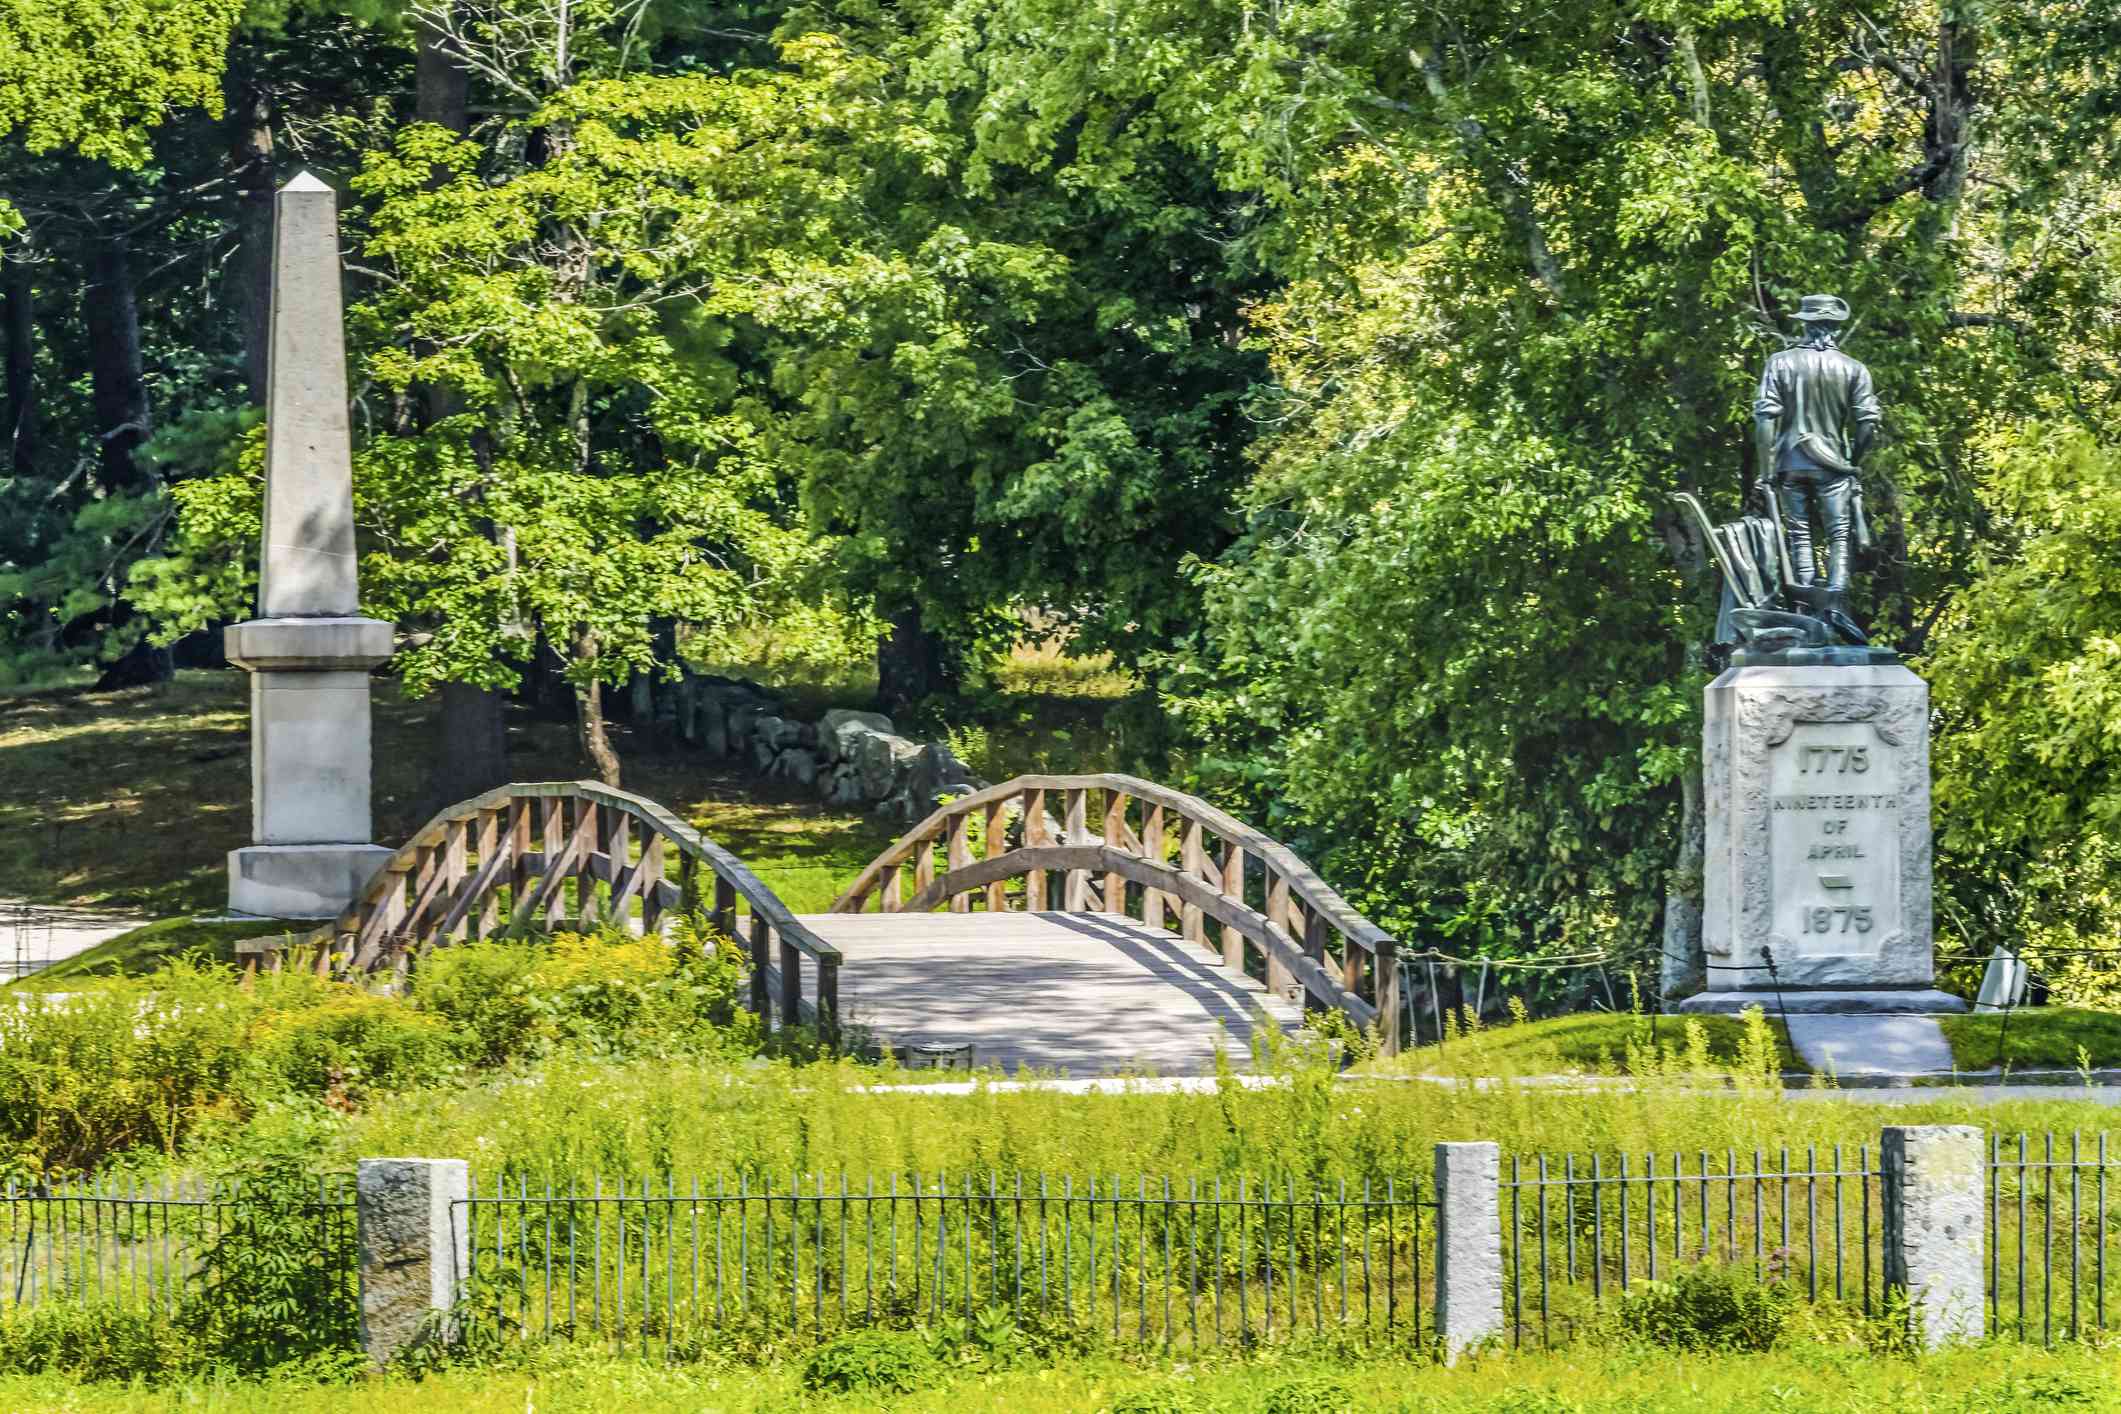 分钟人雕像旧北桥分钟人国家历史公园美国革命纪念碑马萨诸塞州第一战美国革命，1775年4月19日，周围环绕着茂密的绿树，绿树和绿色地面盖